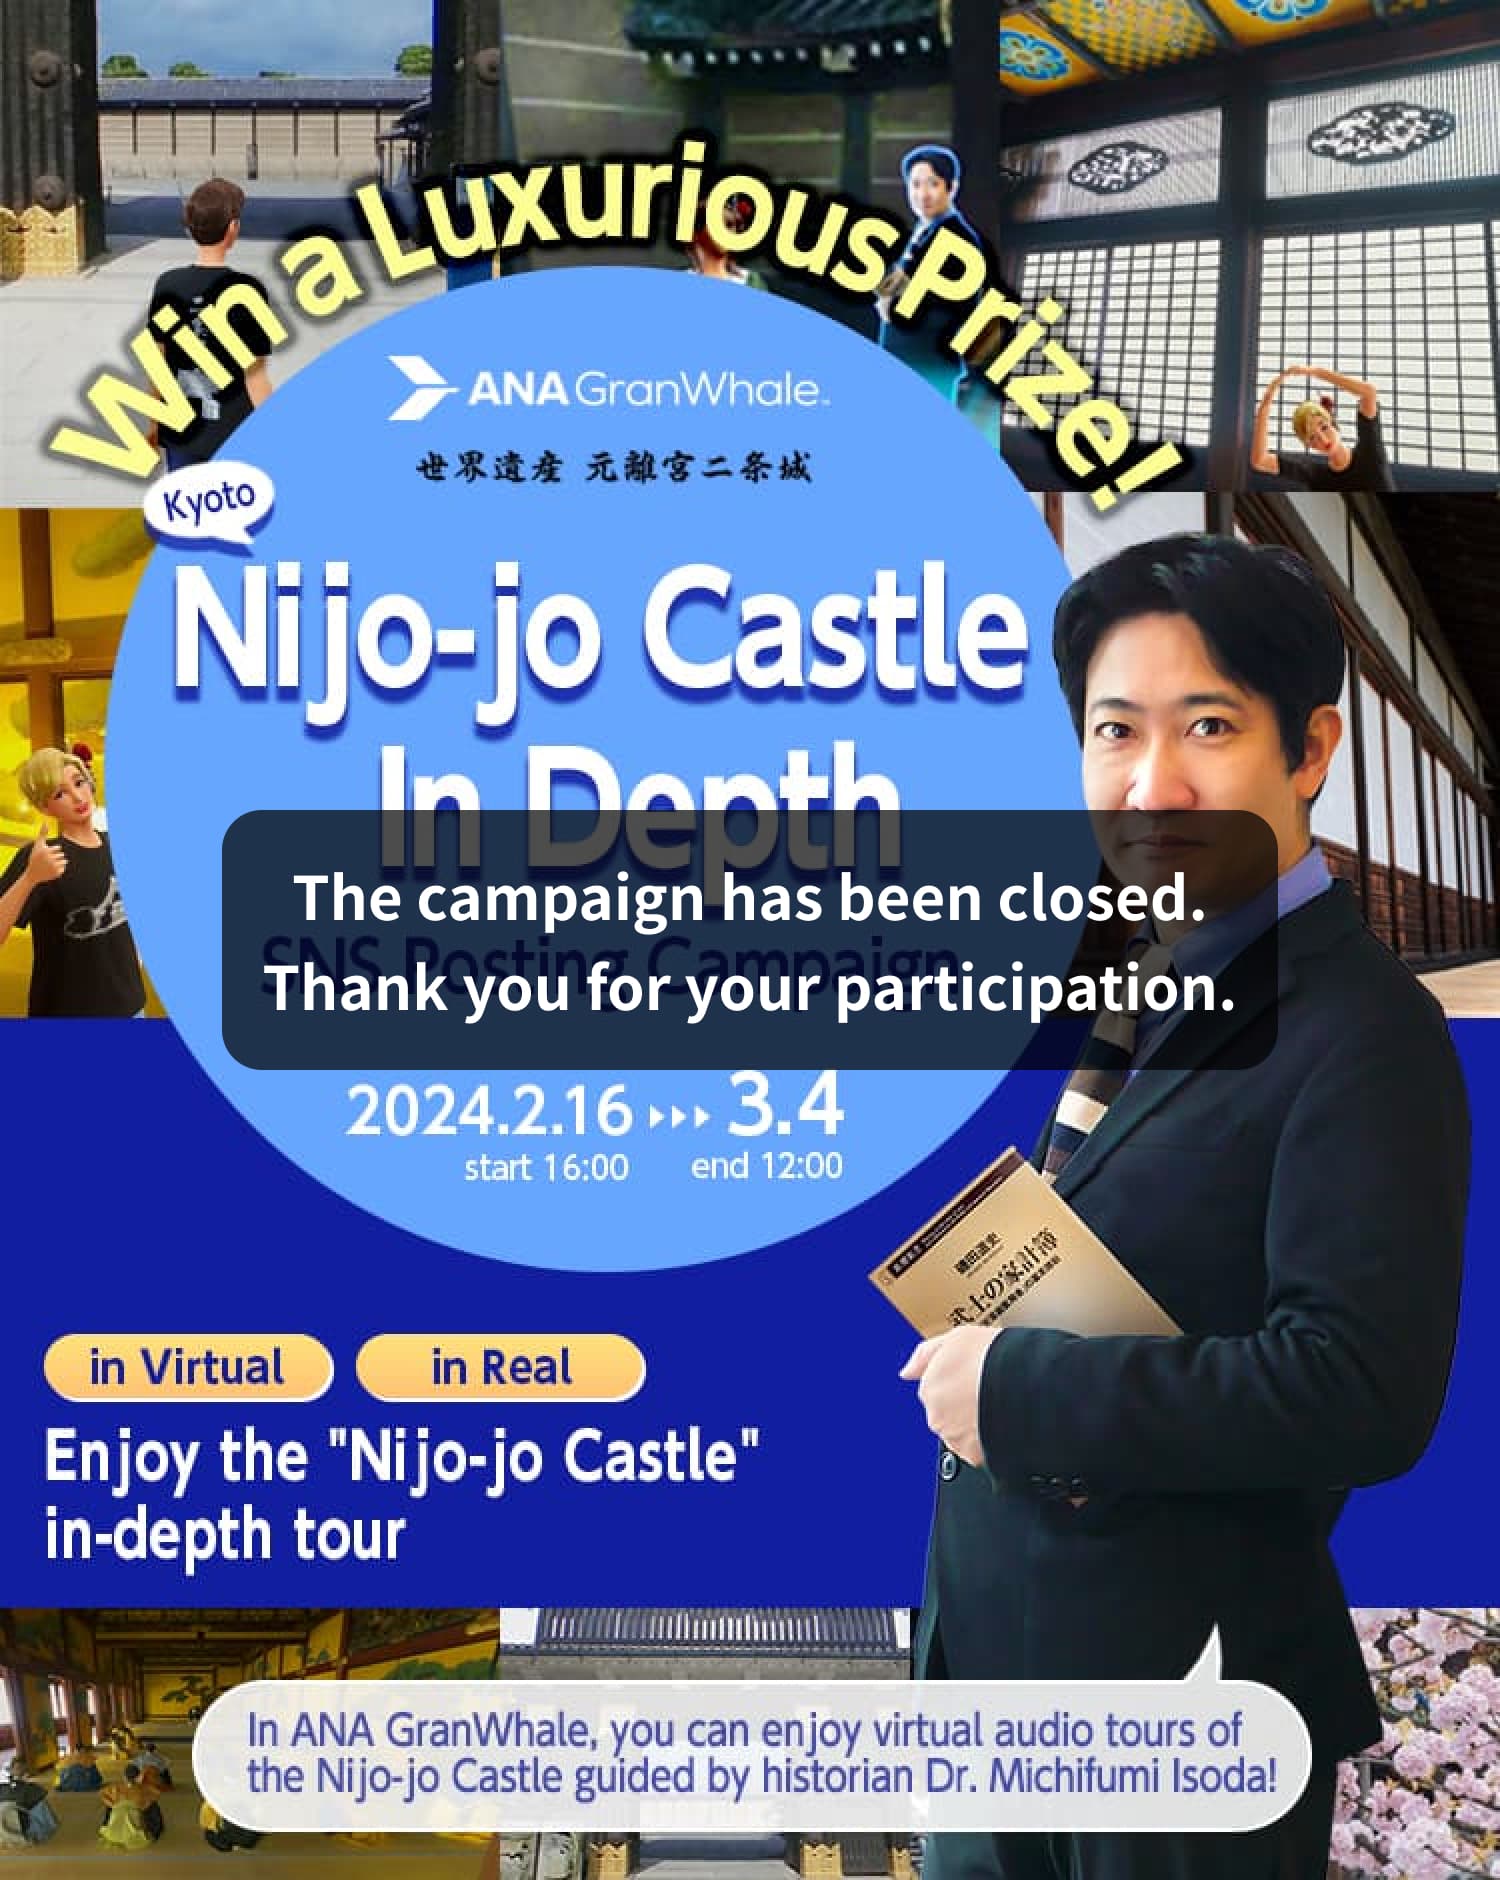 Nijo-jo Castle In Depth: SNS Posting Campaign 2024.2.16 start 16:00 ～ 3.4 end 12:00